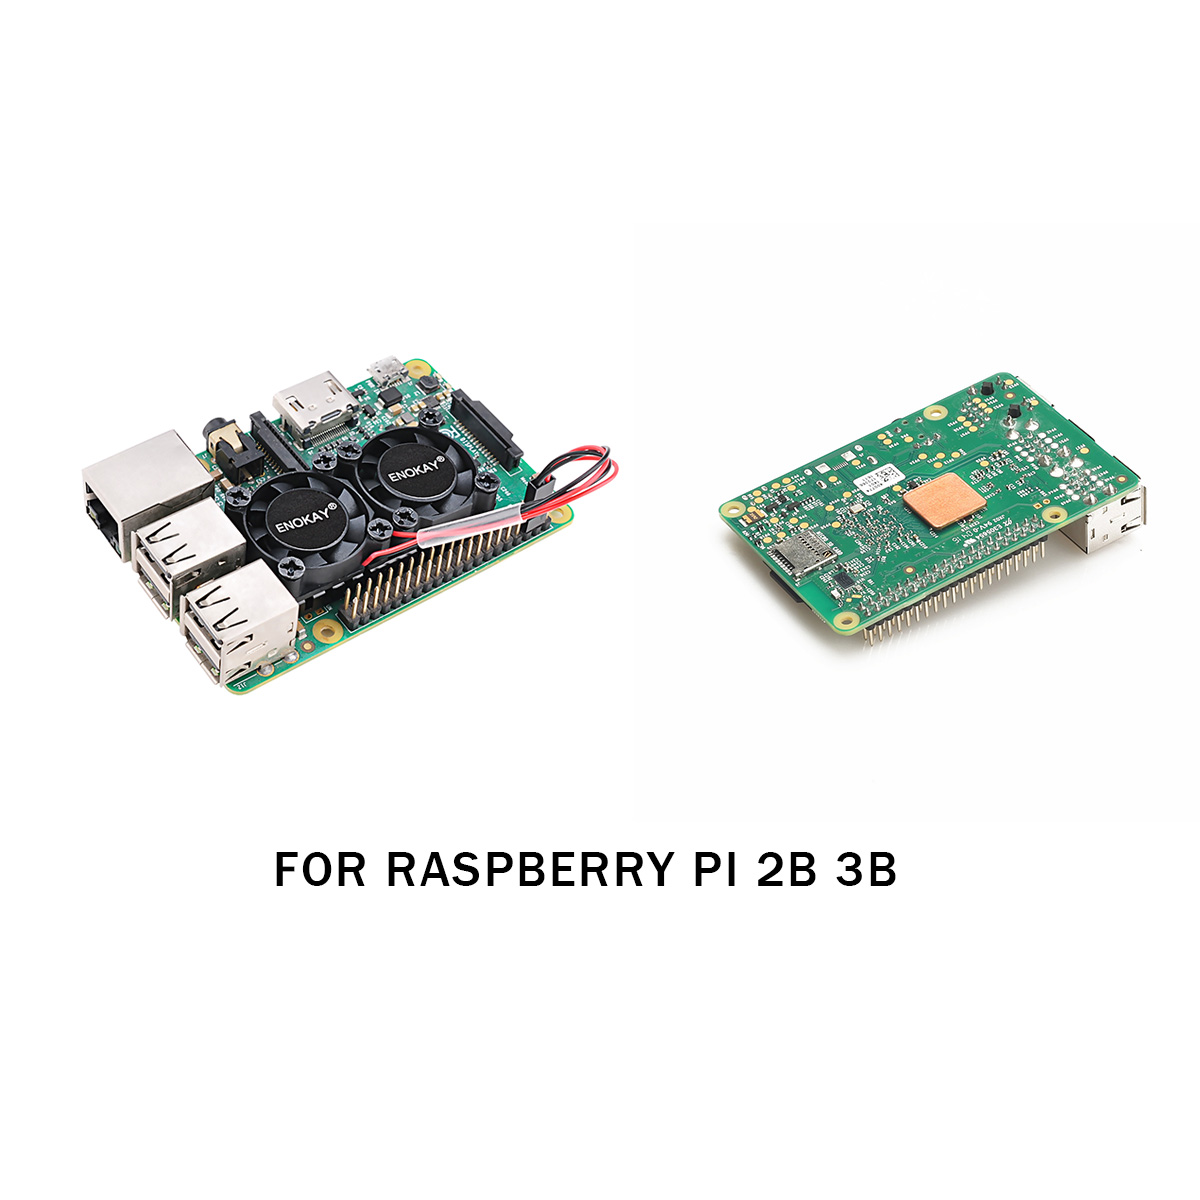 Enokay Raspberry Pi 2 3 Model B B+ Dual Fan with Raspberry Pi Heatsink for Raspberry Pi 2B 3B 3B+